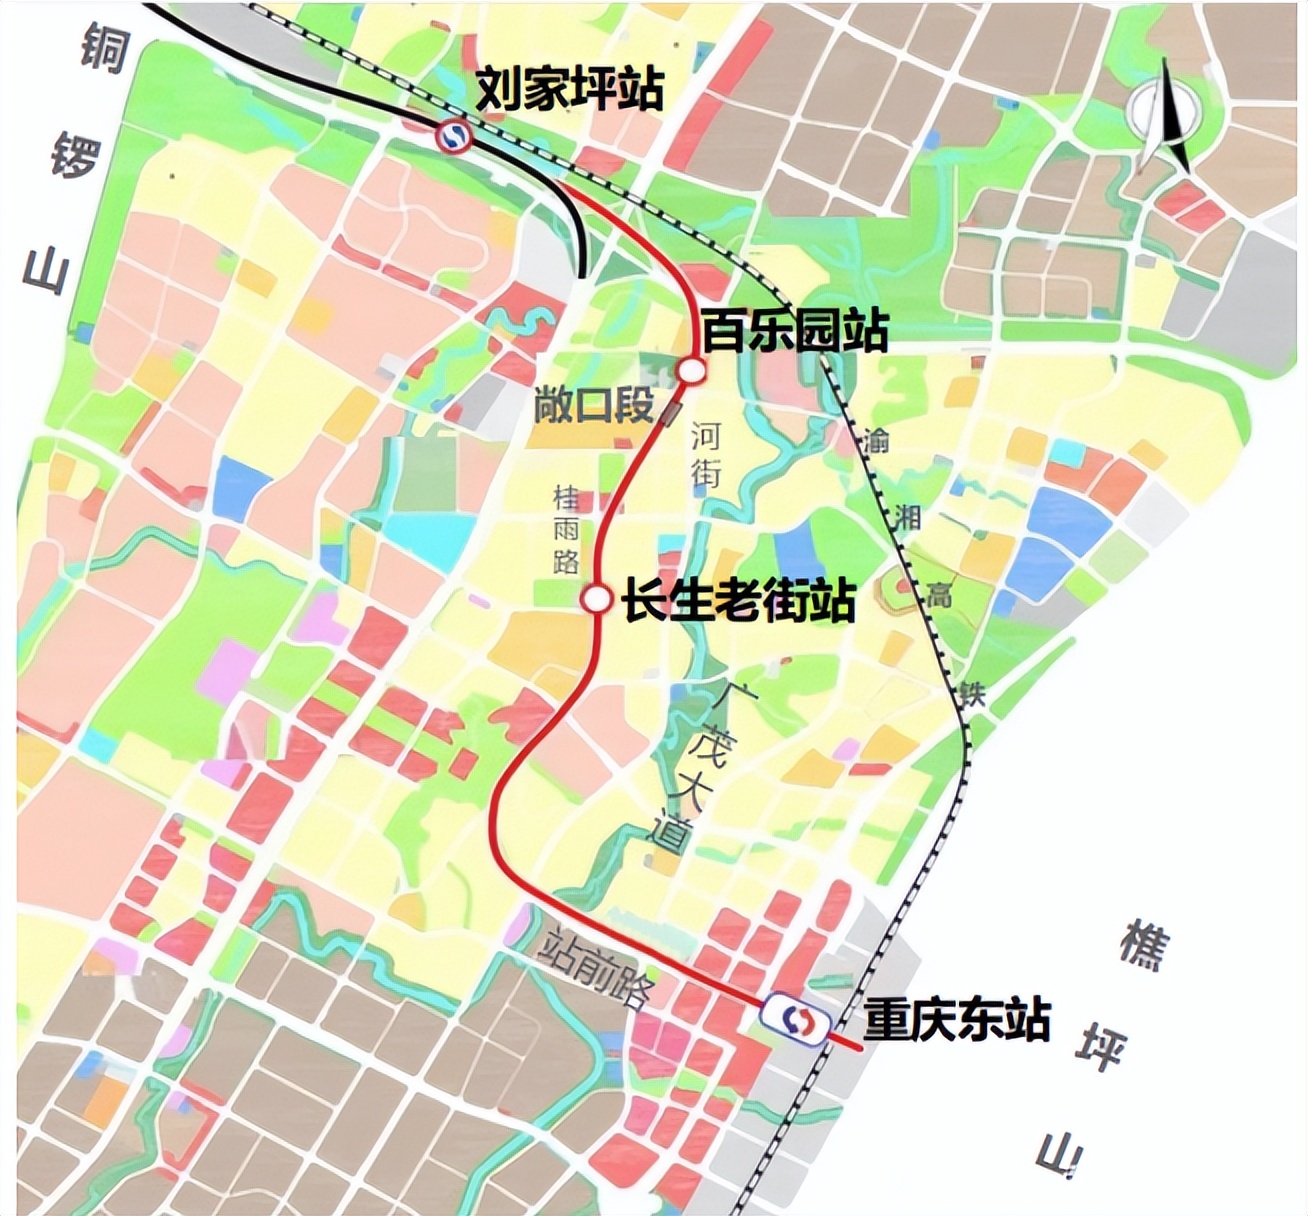 重庆轨道交通6号线东延伸段开工 全线设4座车站